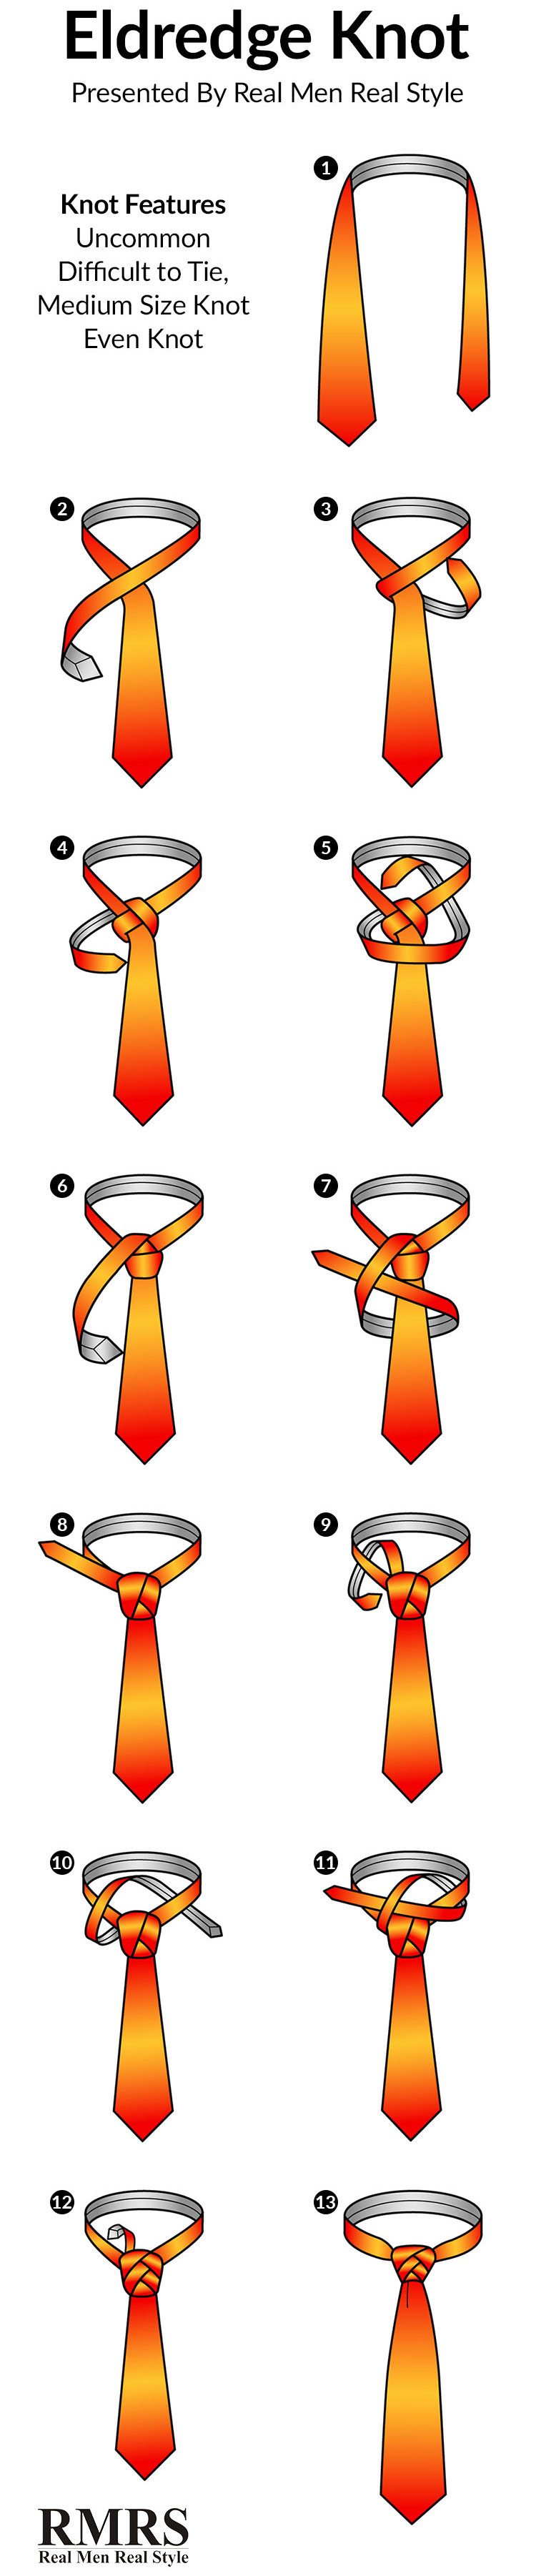 complex-tie-knots-eldredge-knot-infographic-image